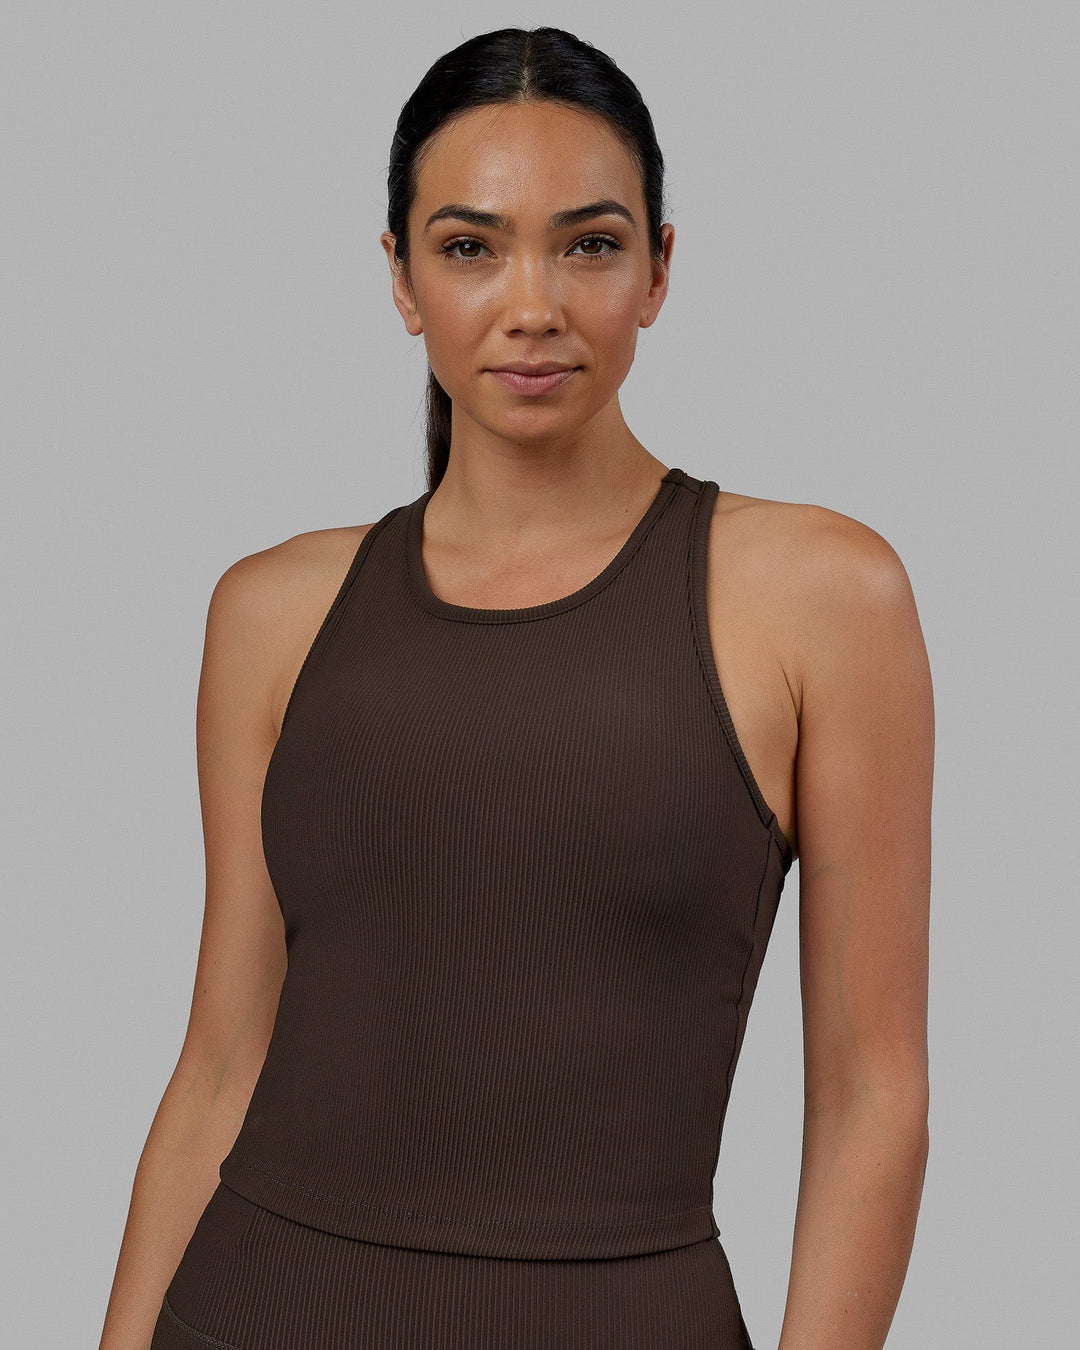 Active Women's Bra Top, Athletic Yoga Crop Tank Top with Built in Shelf Bra, Custom Women's Tank Tops